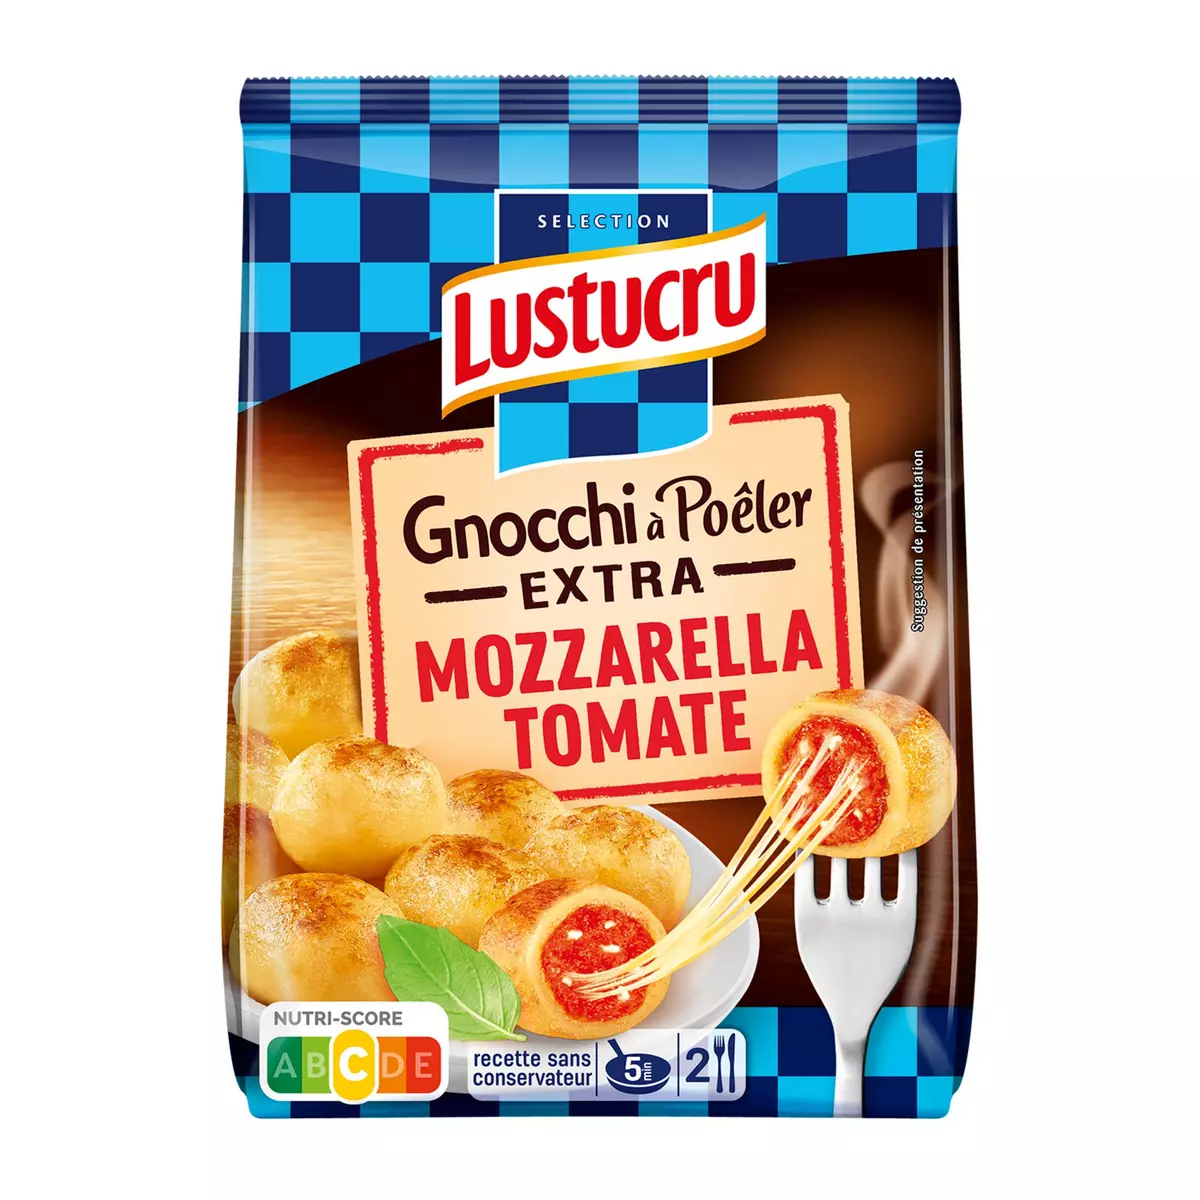 LUSTUCRU Gnocchi à poêler extra tomate mozzarella 2 portions 280g